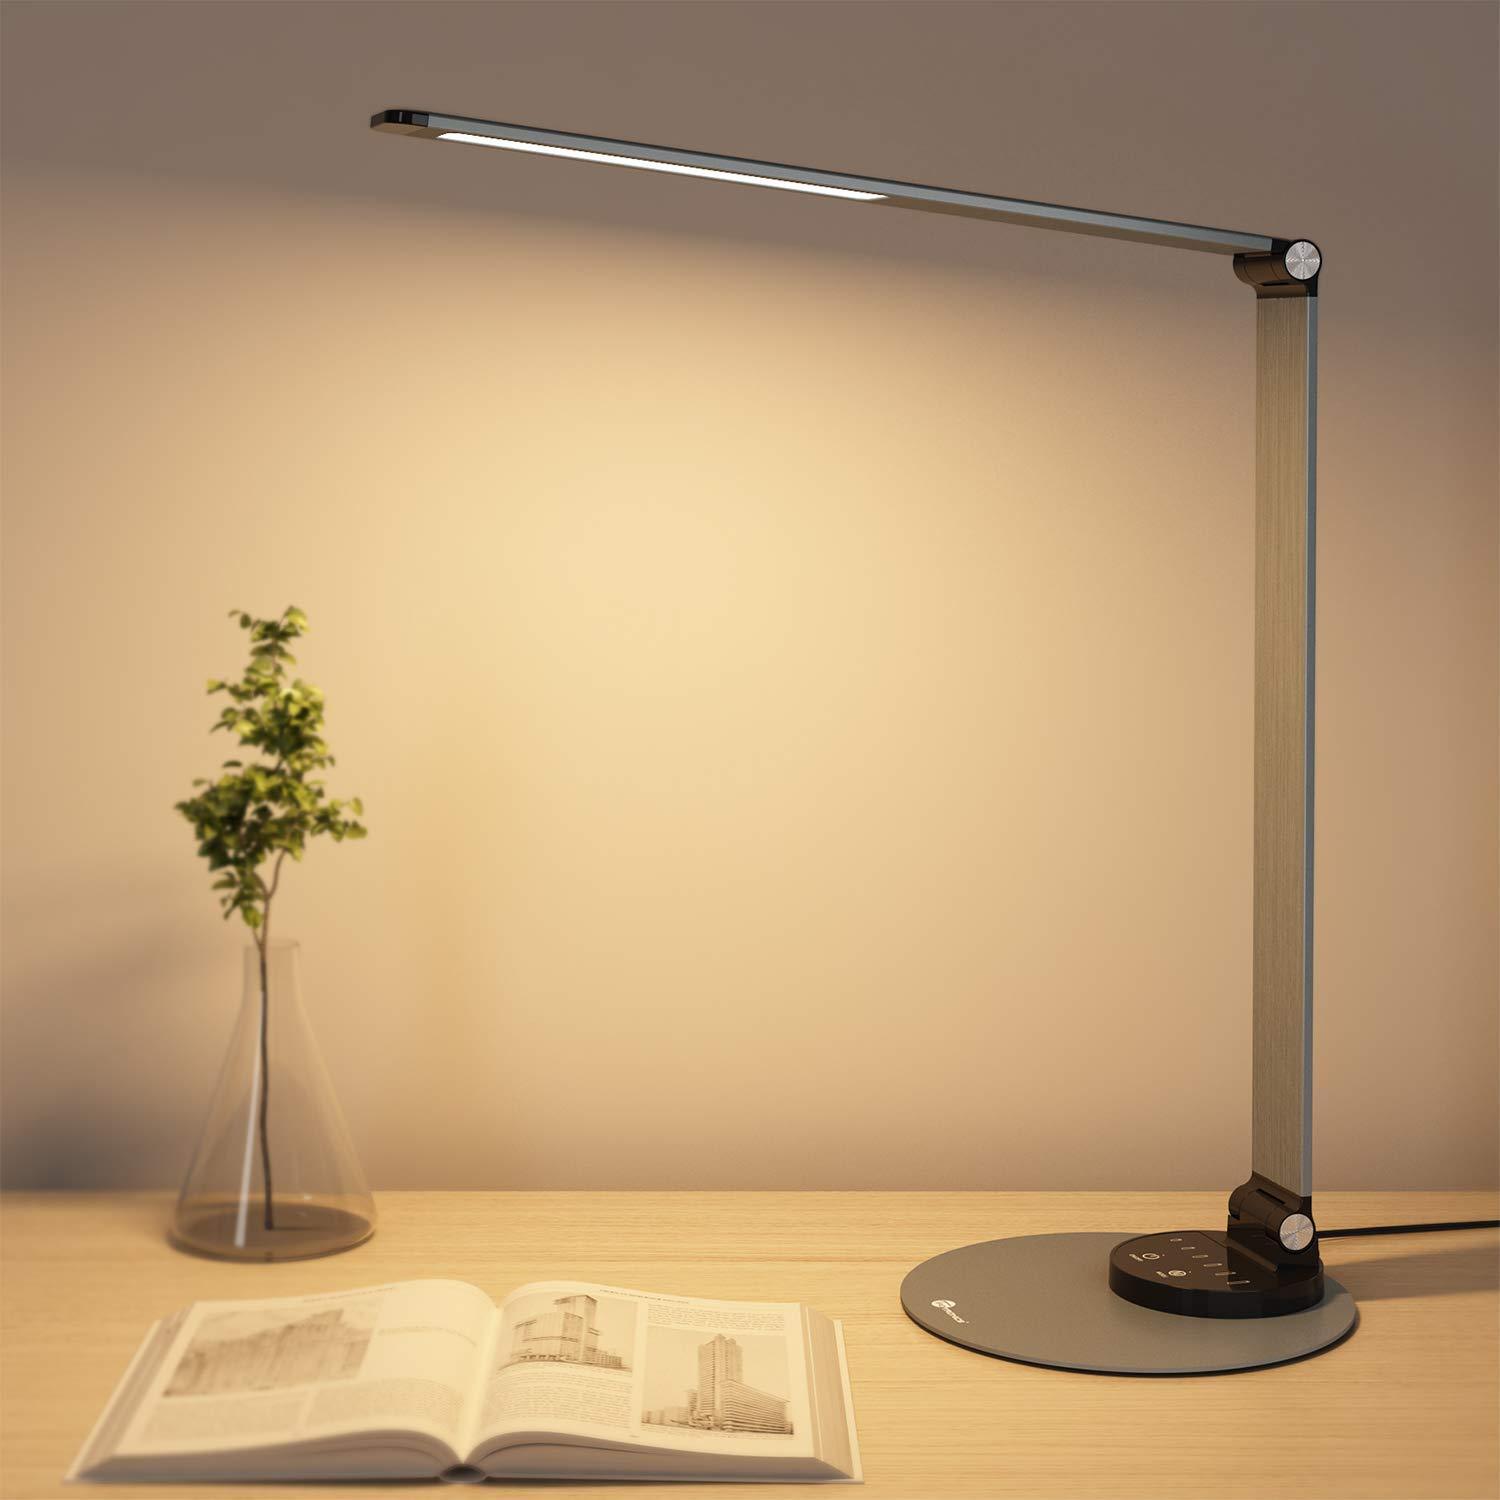 taotronics desk lamp